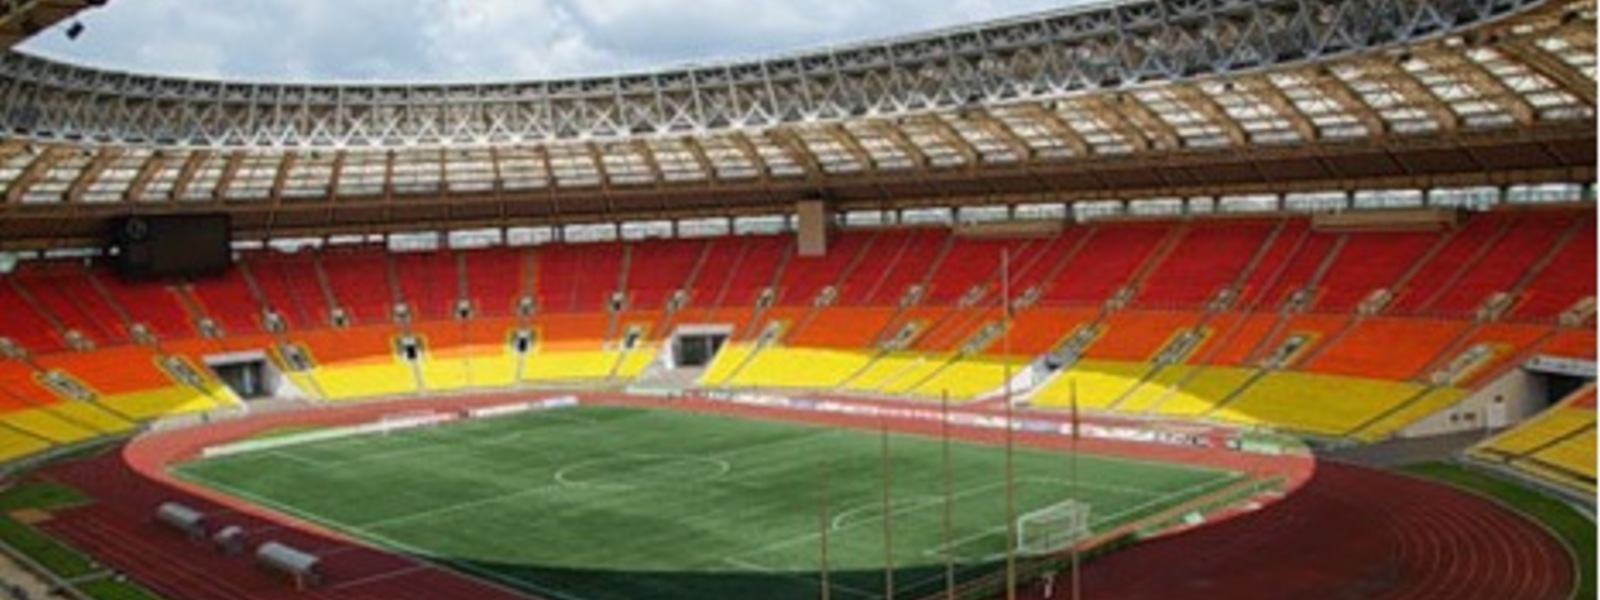 Very big stadion luzhniki